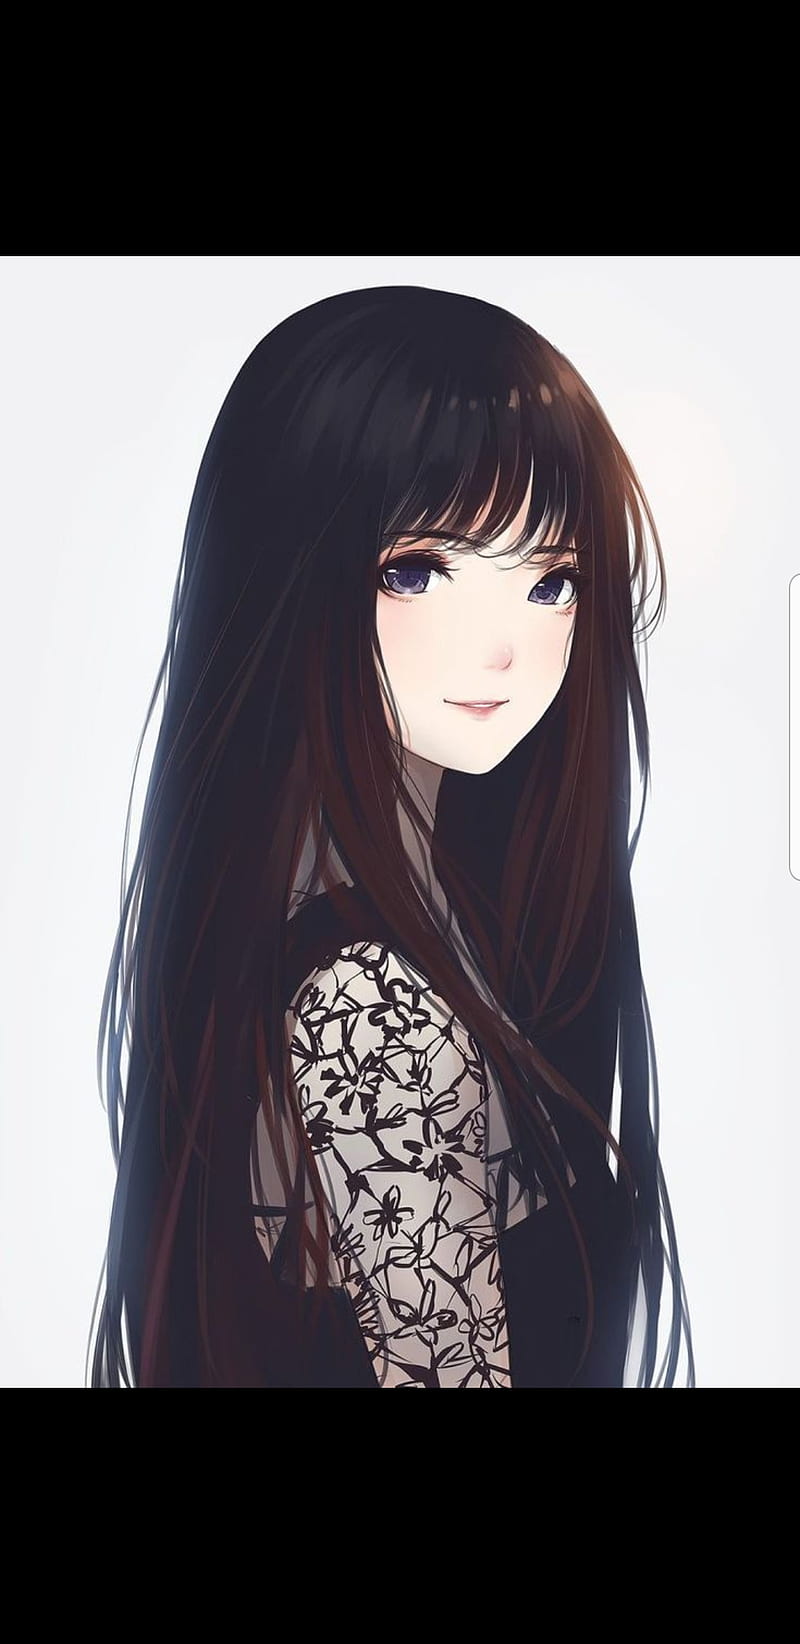 Anime girl Wallpaper 4K Green eyes Girly backgrounds 9792